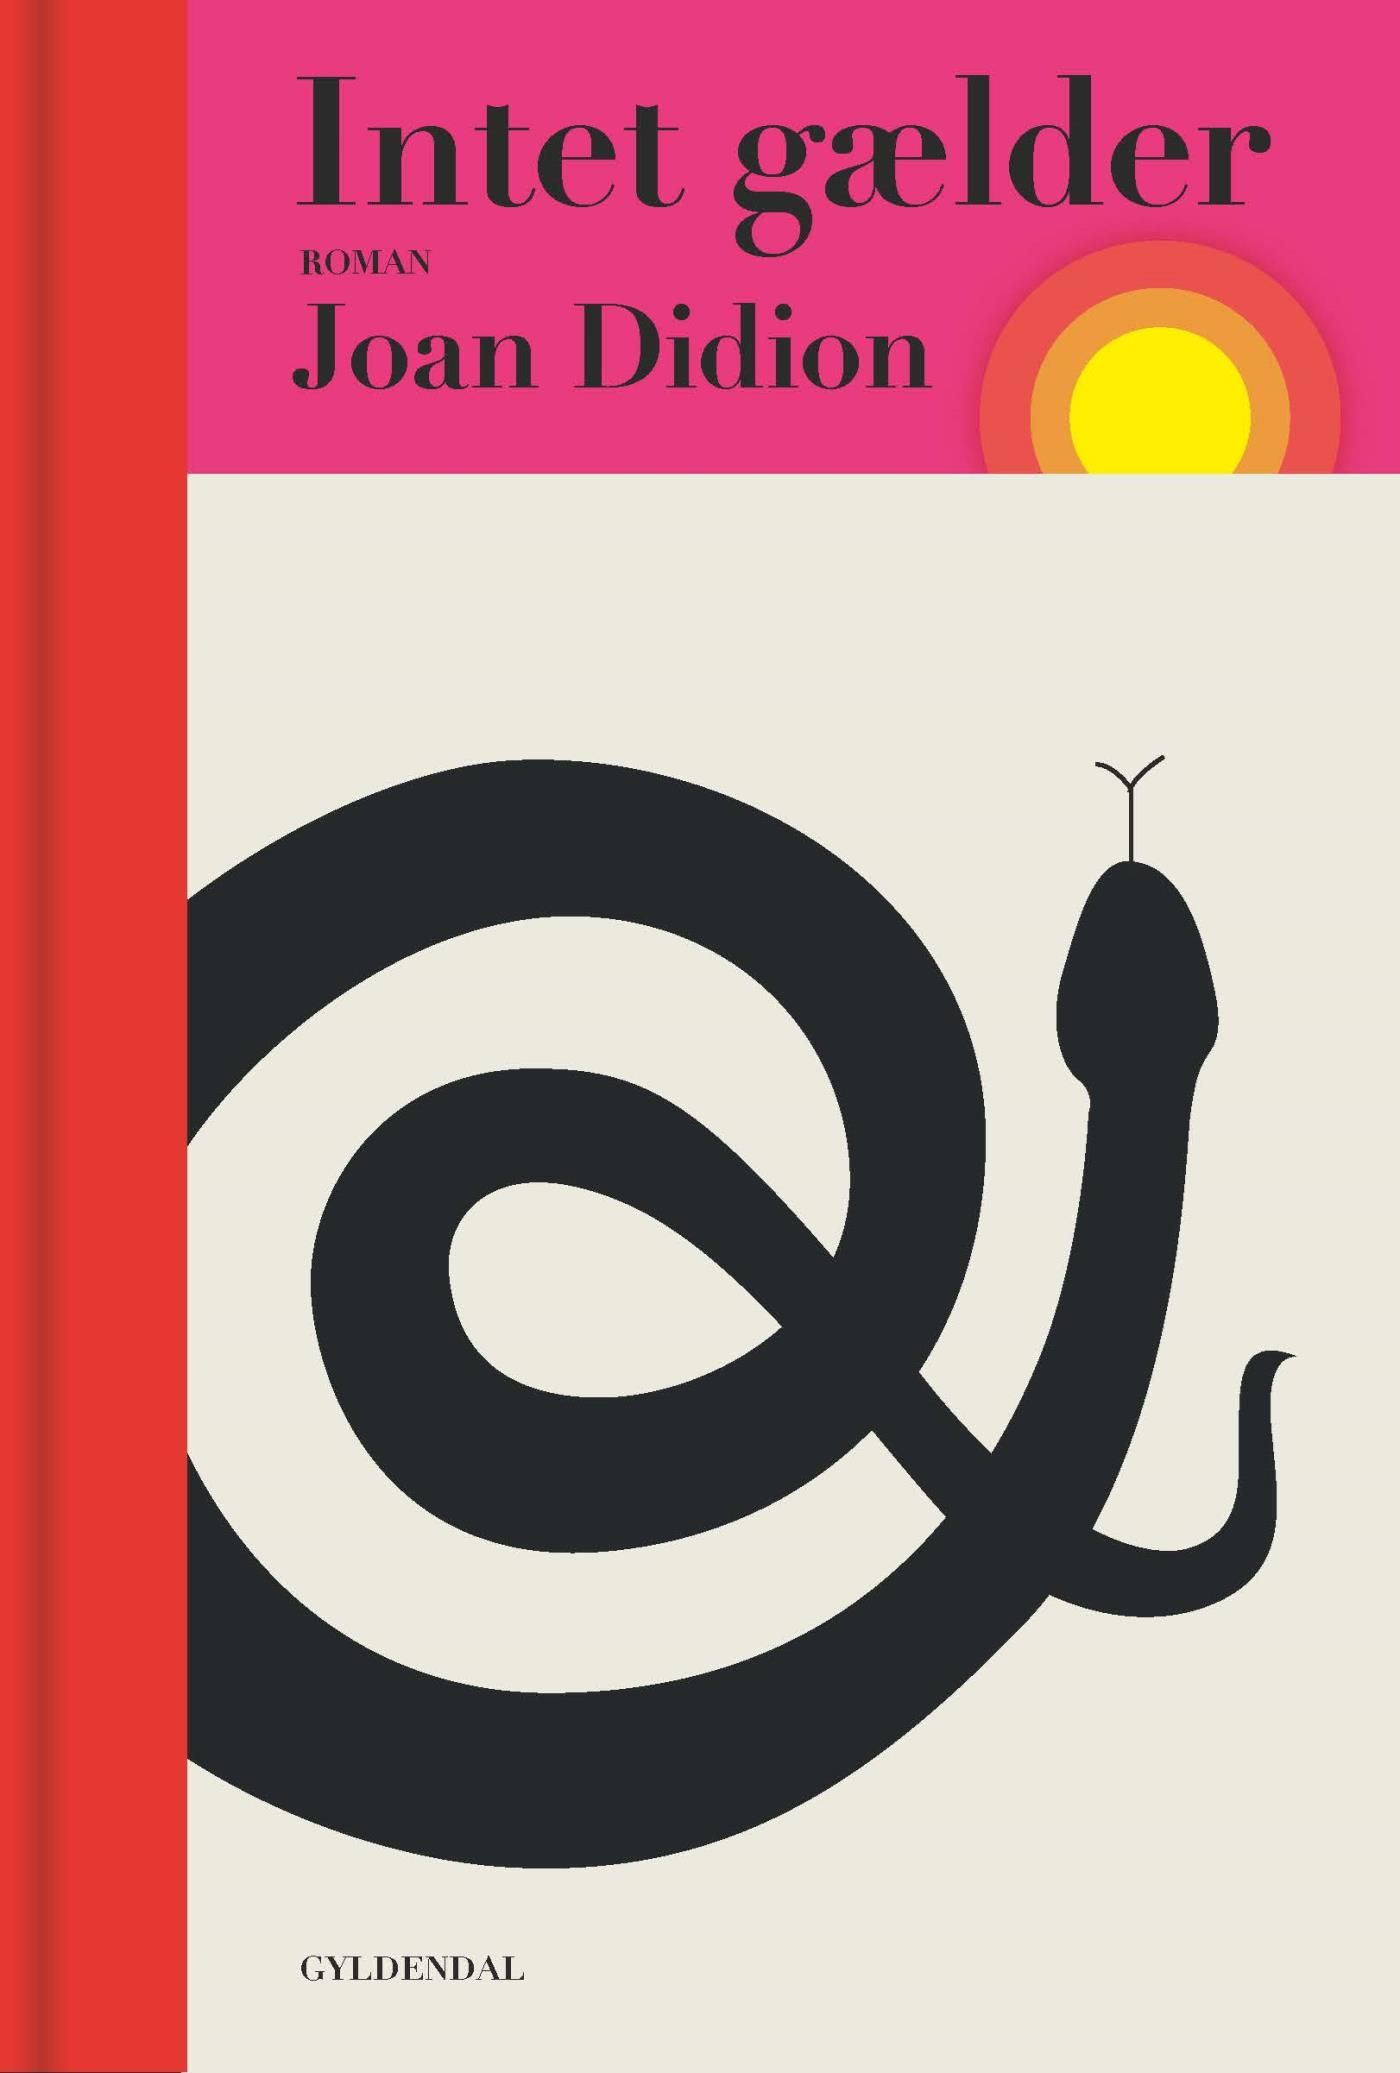 Intet gælder, e-bog af Joan Didion